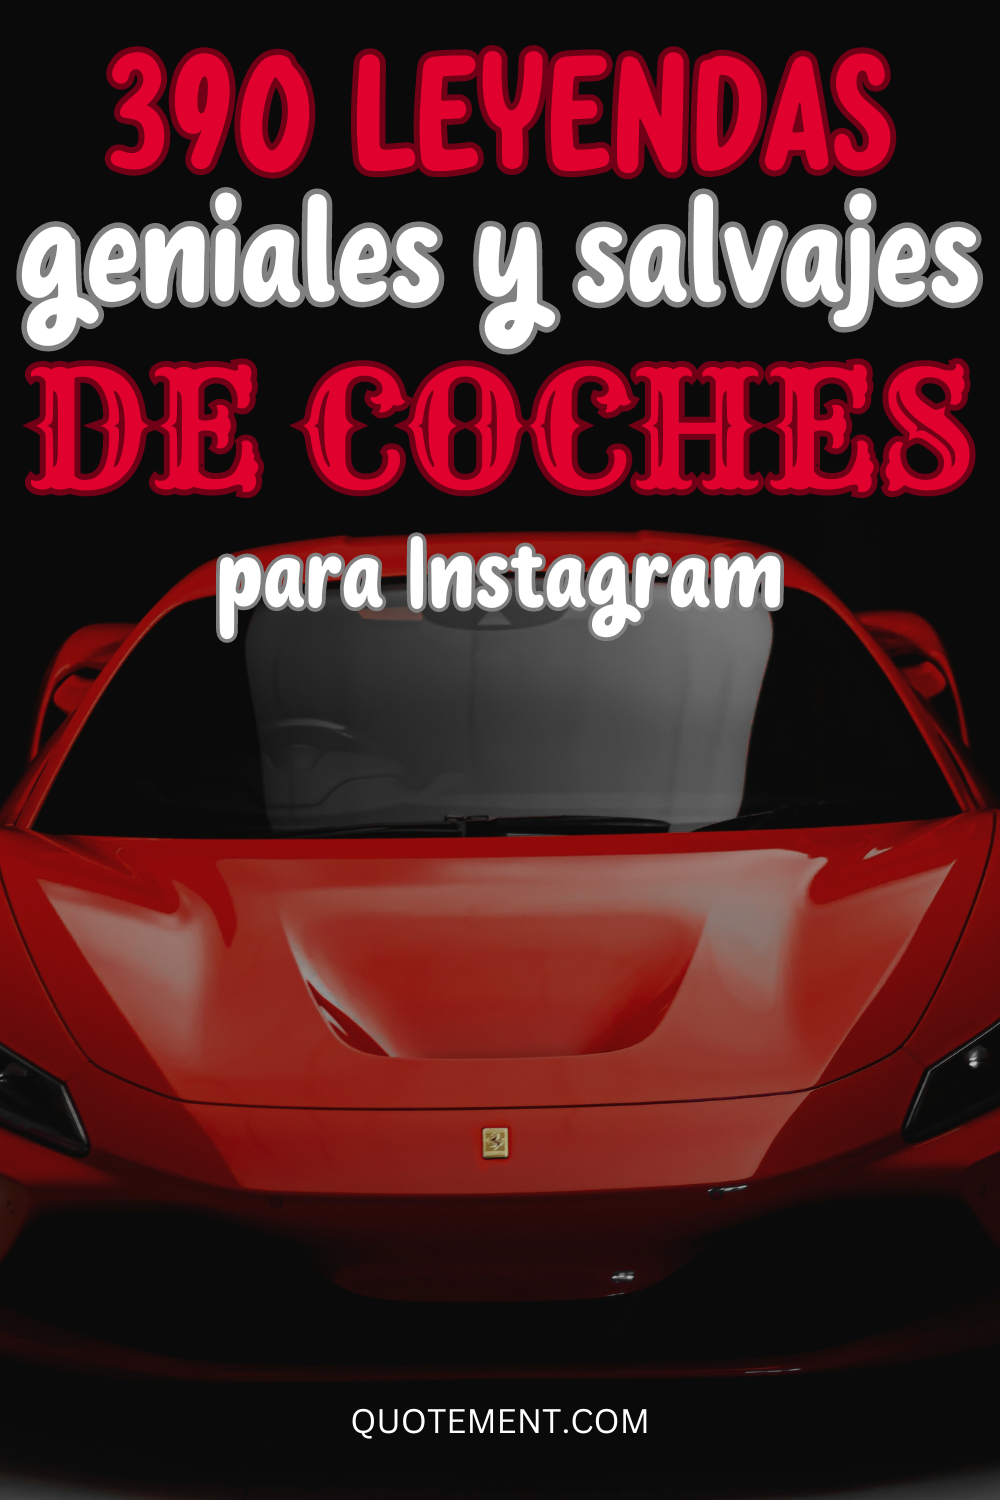 390 leyendas geniales de coches para Instagram para todos los amantes de los coches